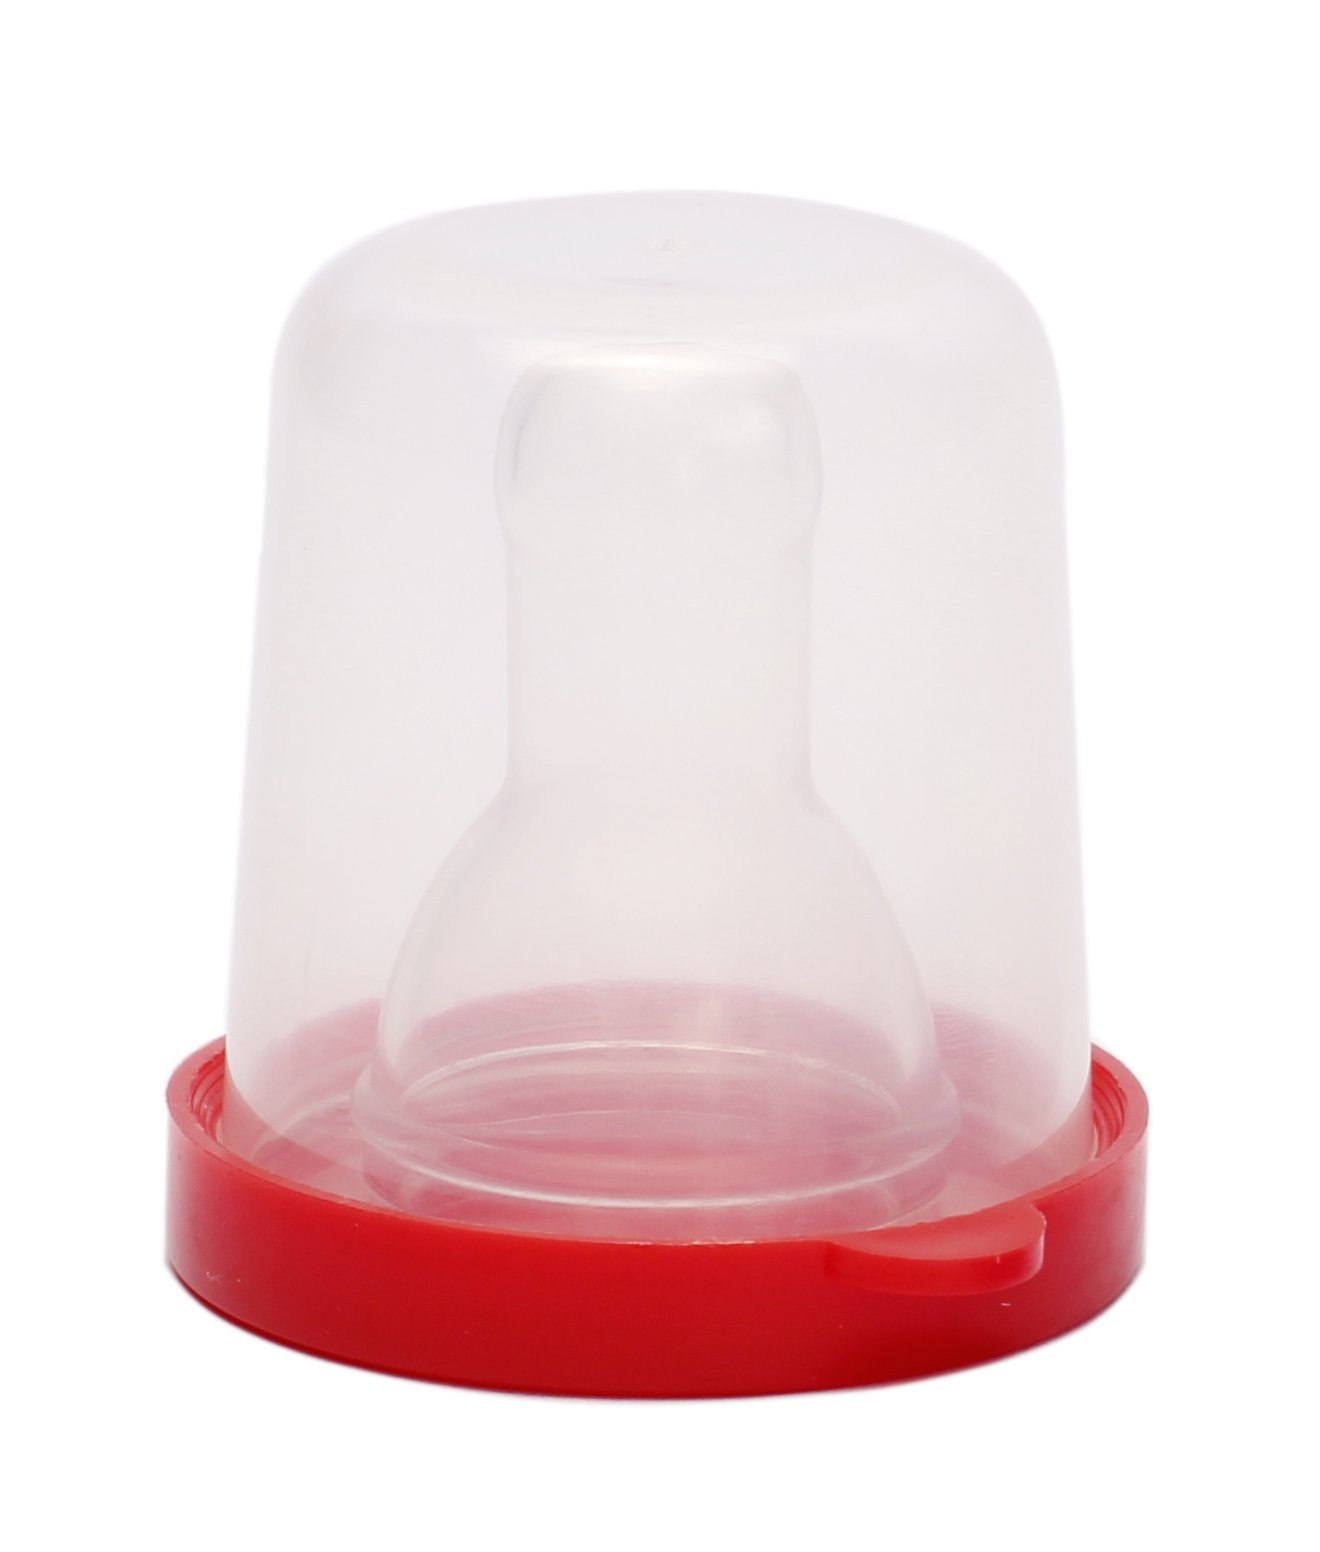 Соска силиконовая Курносики, круглая, в контейнере, размер S, от 0 мес., красный (7030 S) - фото 1